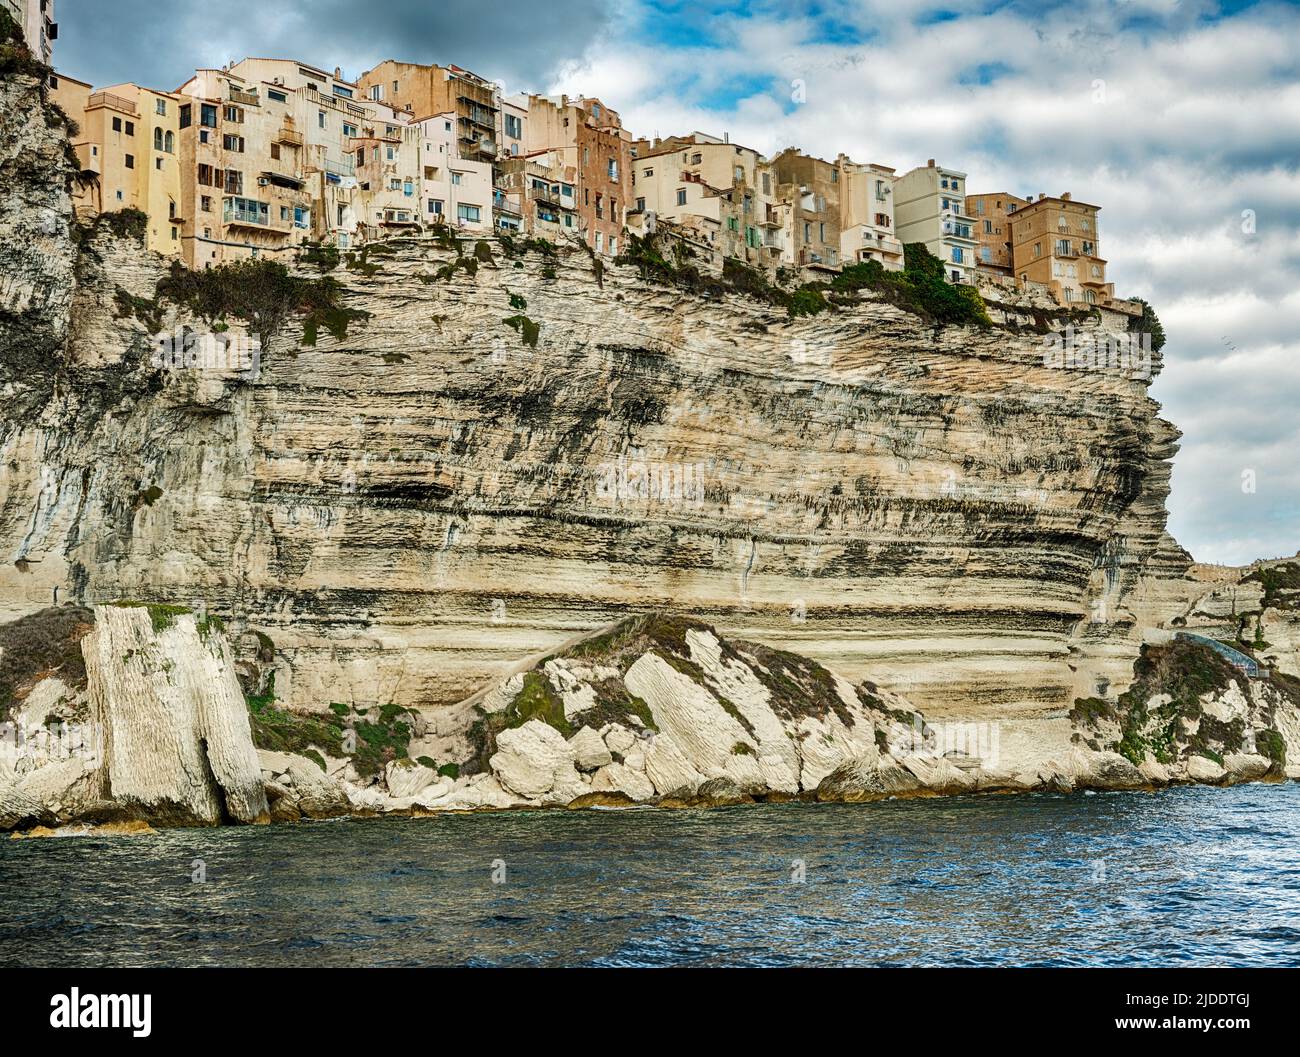 La città di Bonifacio in Corsica è arroccata sul bordo di scogliere di pietra che si affacciano sul Mar Tirreno. Foto Stock